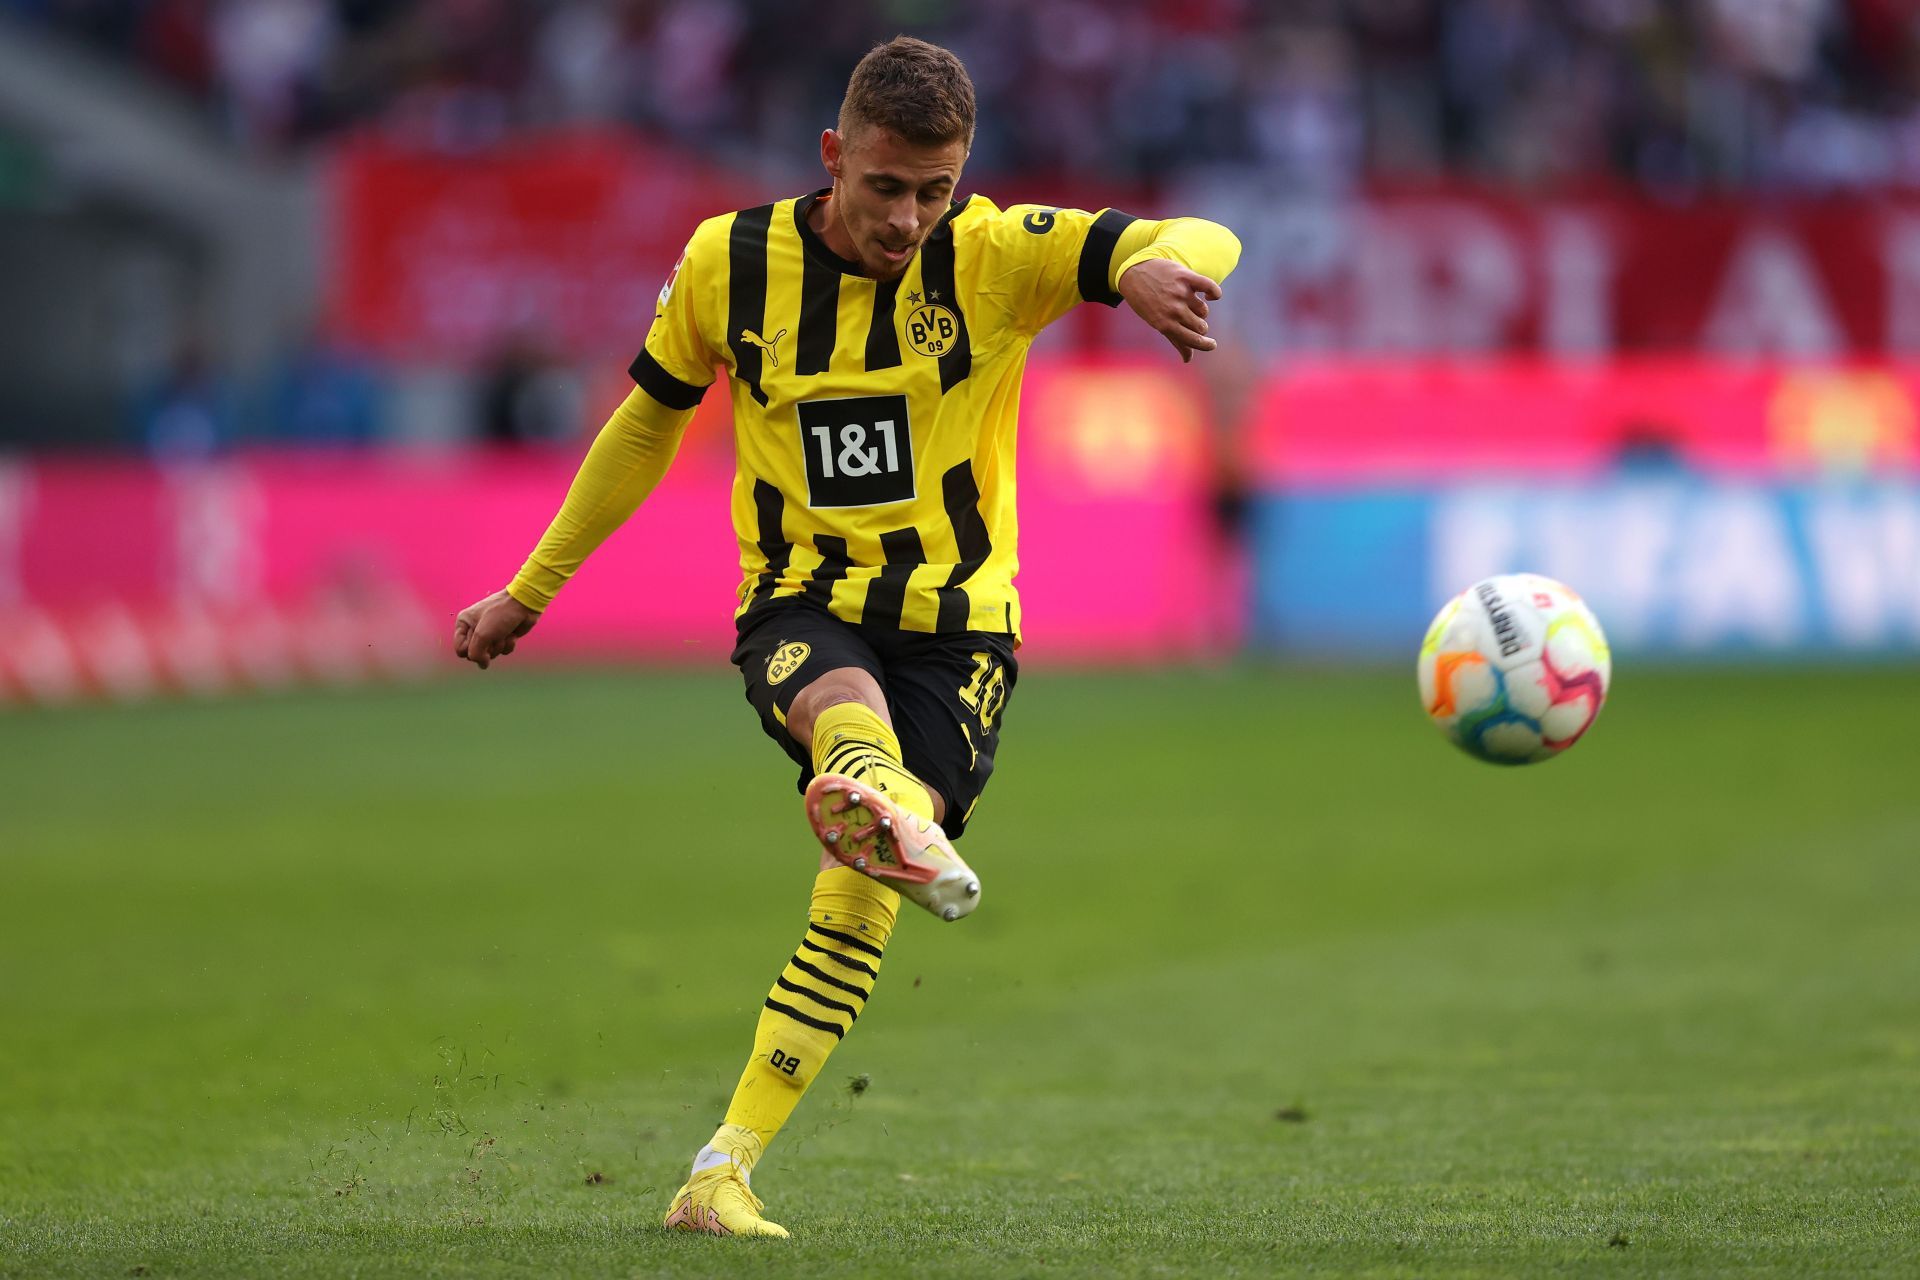 Hazard playing for Borussia Dortmund - Bundesliga